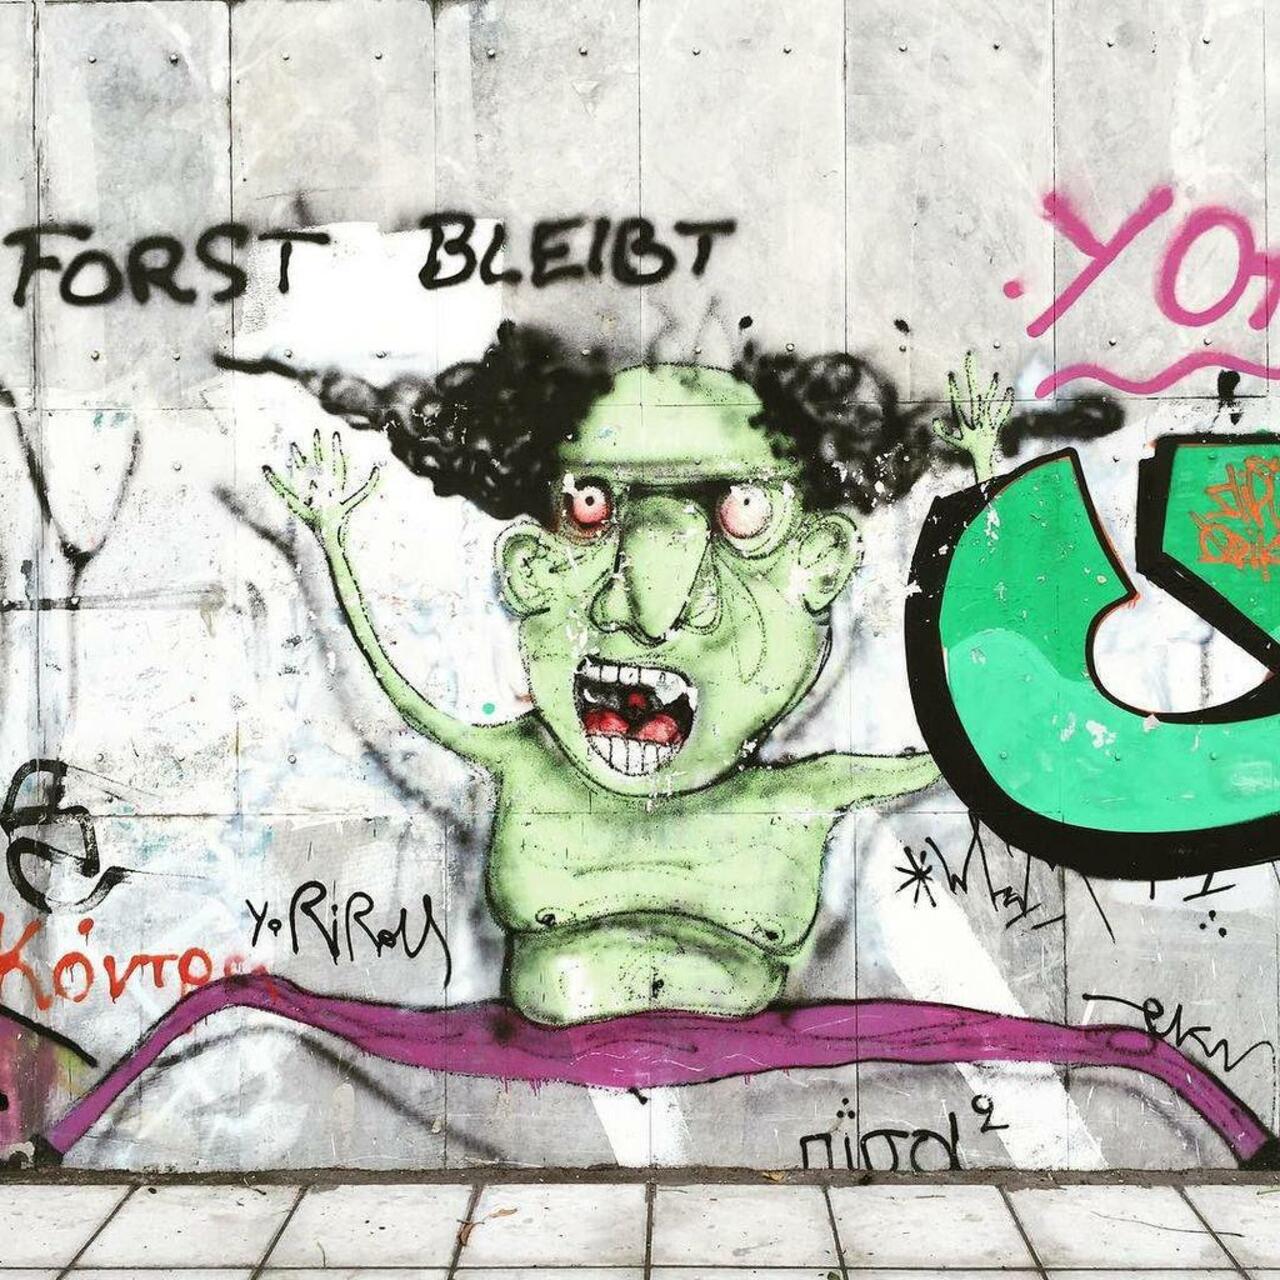 #streetart #graffiti #graffitiart #instagraffiti #instagraff #rsa_graffiti #instastreetart… http://ift.tt/1QKwOW6 http://t.co/qNBlu58ic9